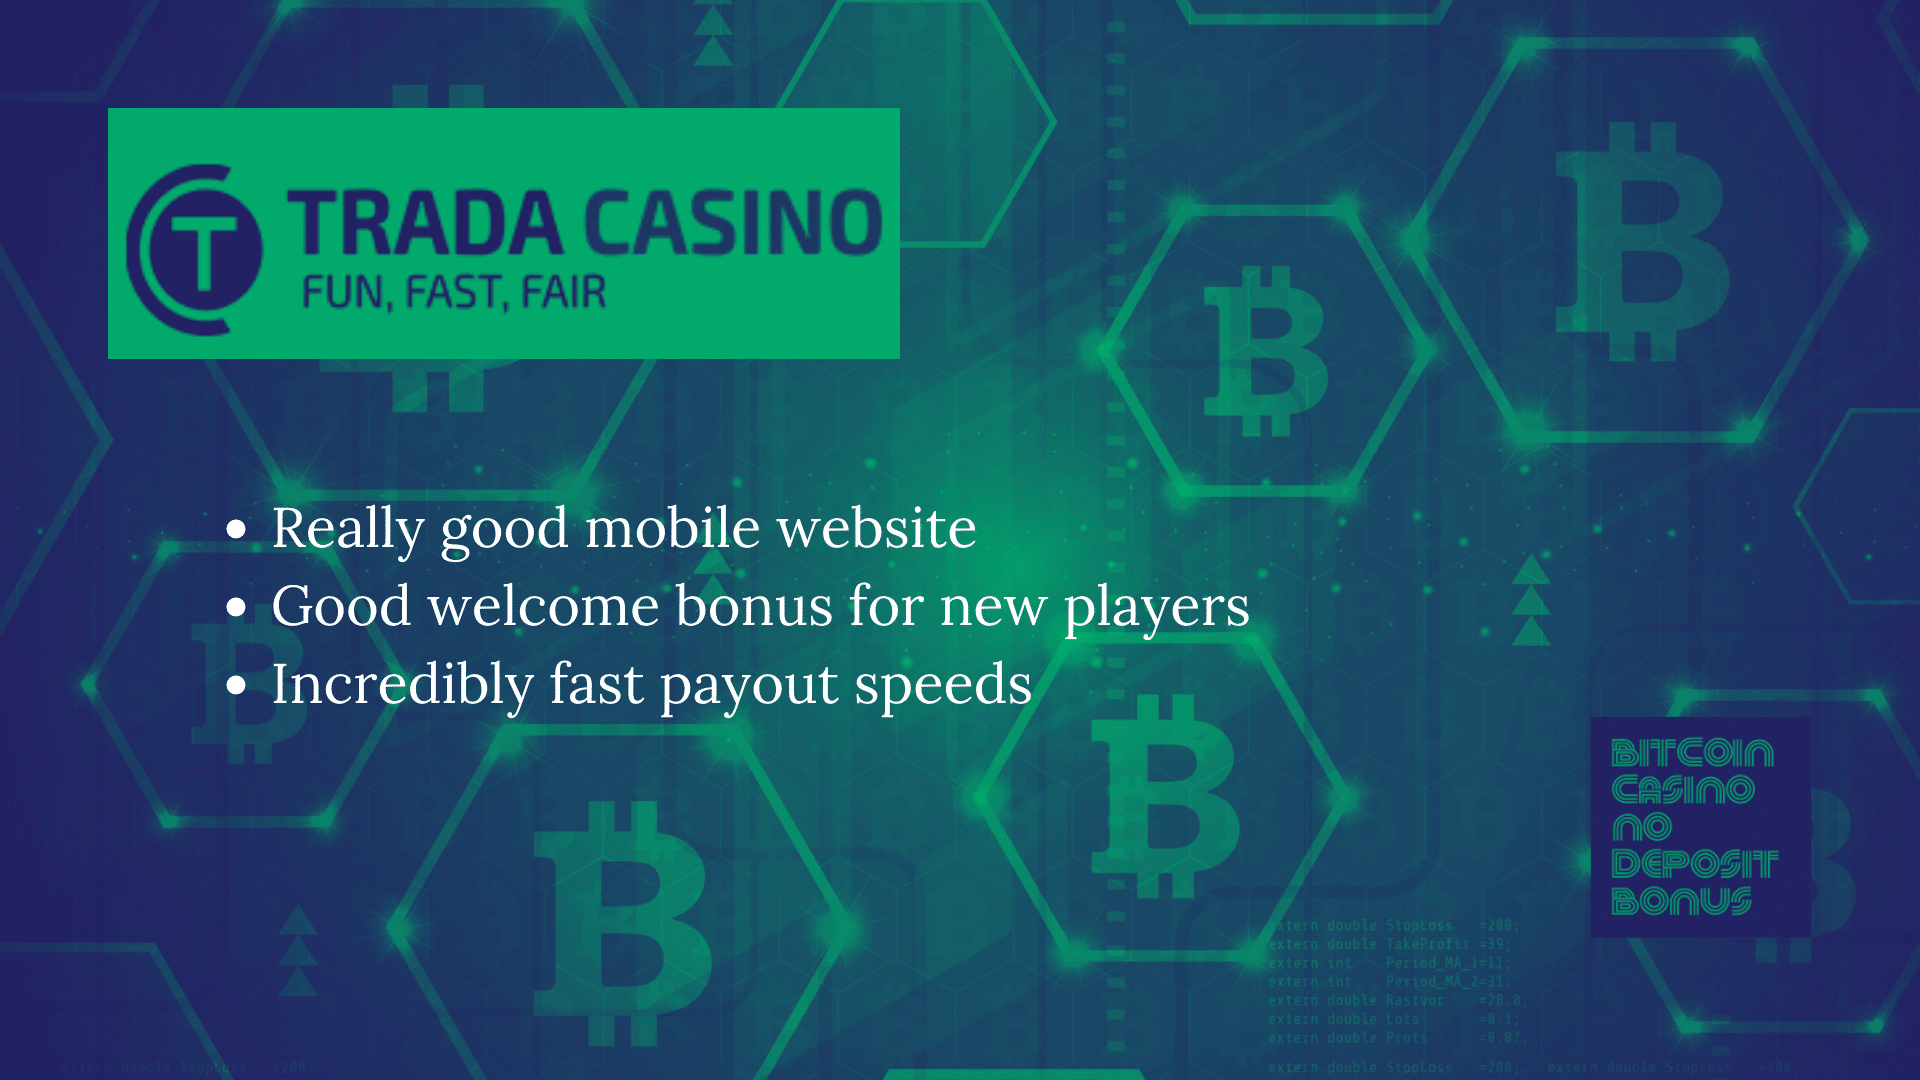 You are currently viewing Trada Casino Bonus Codes – TradaCasino.com Free Spins December 2022